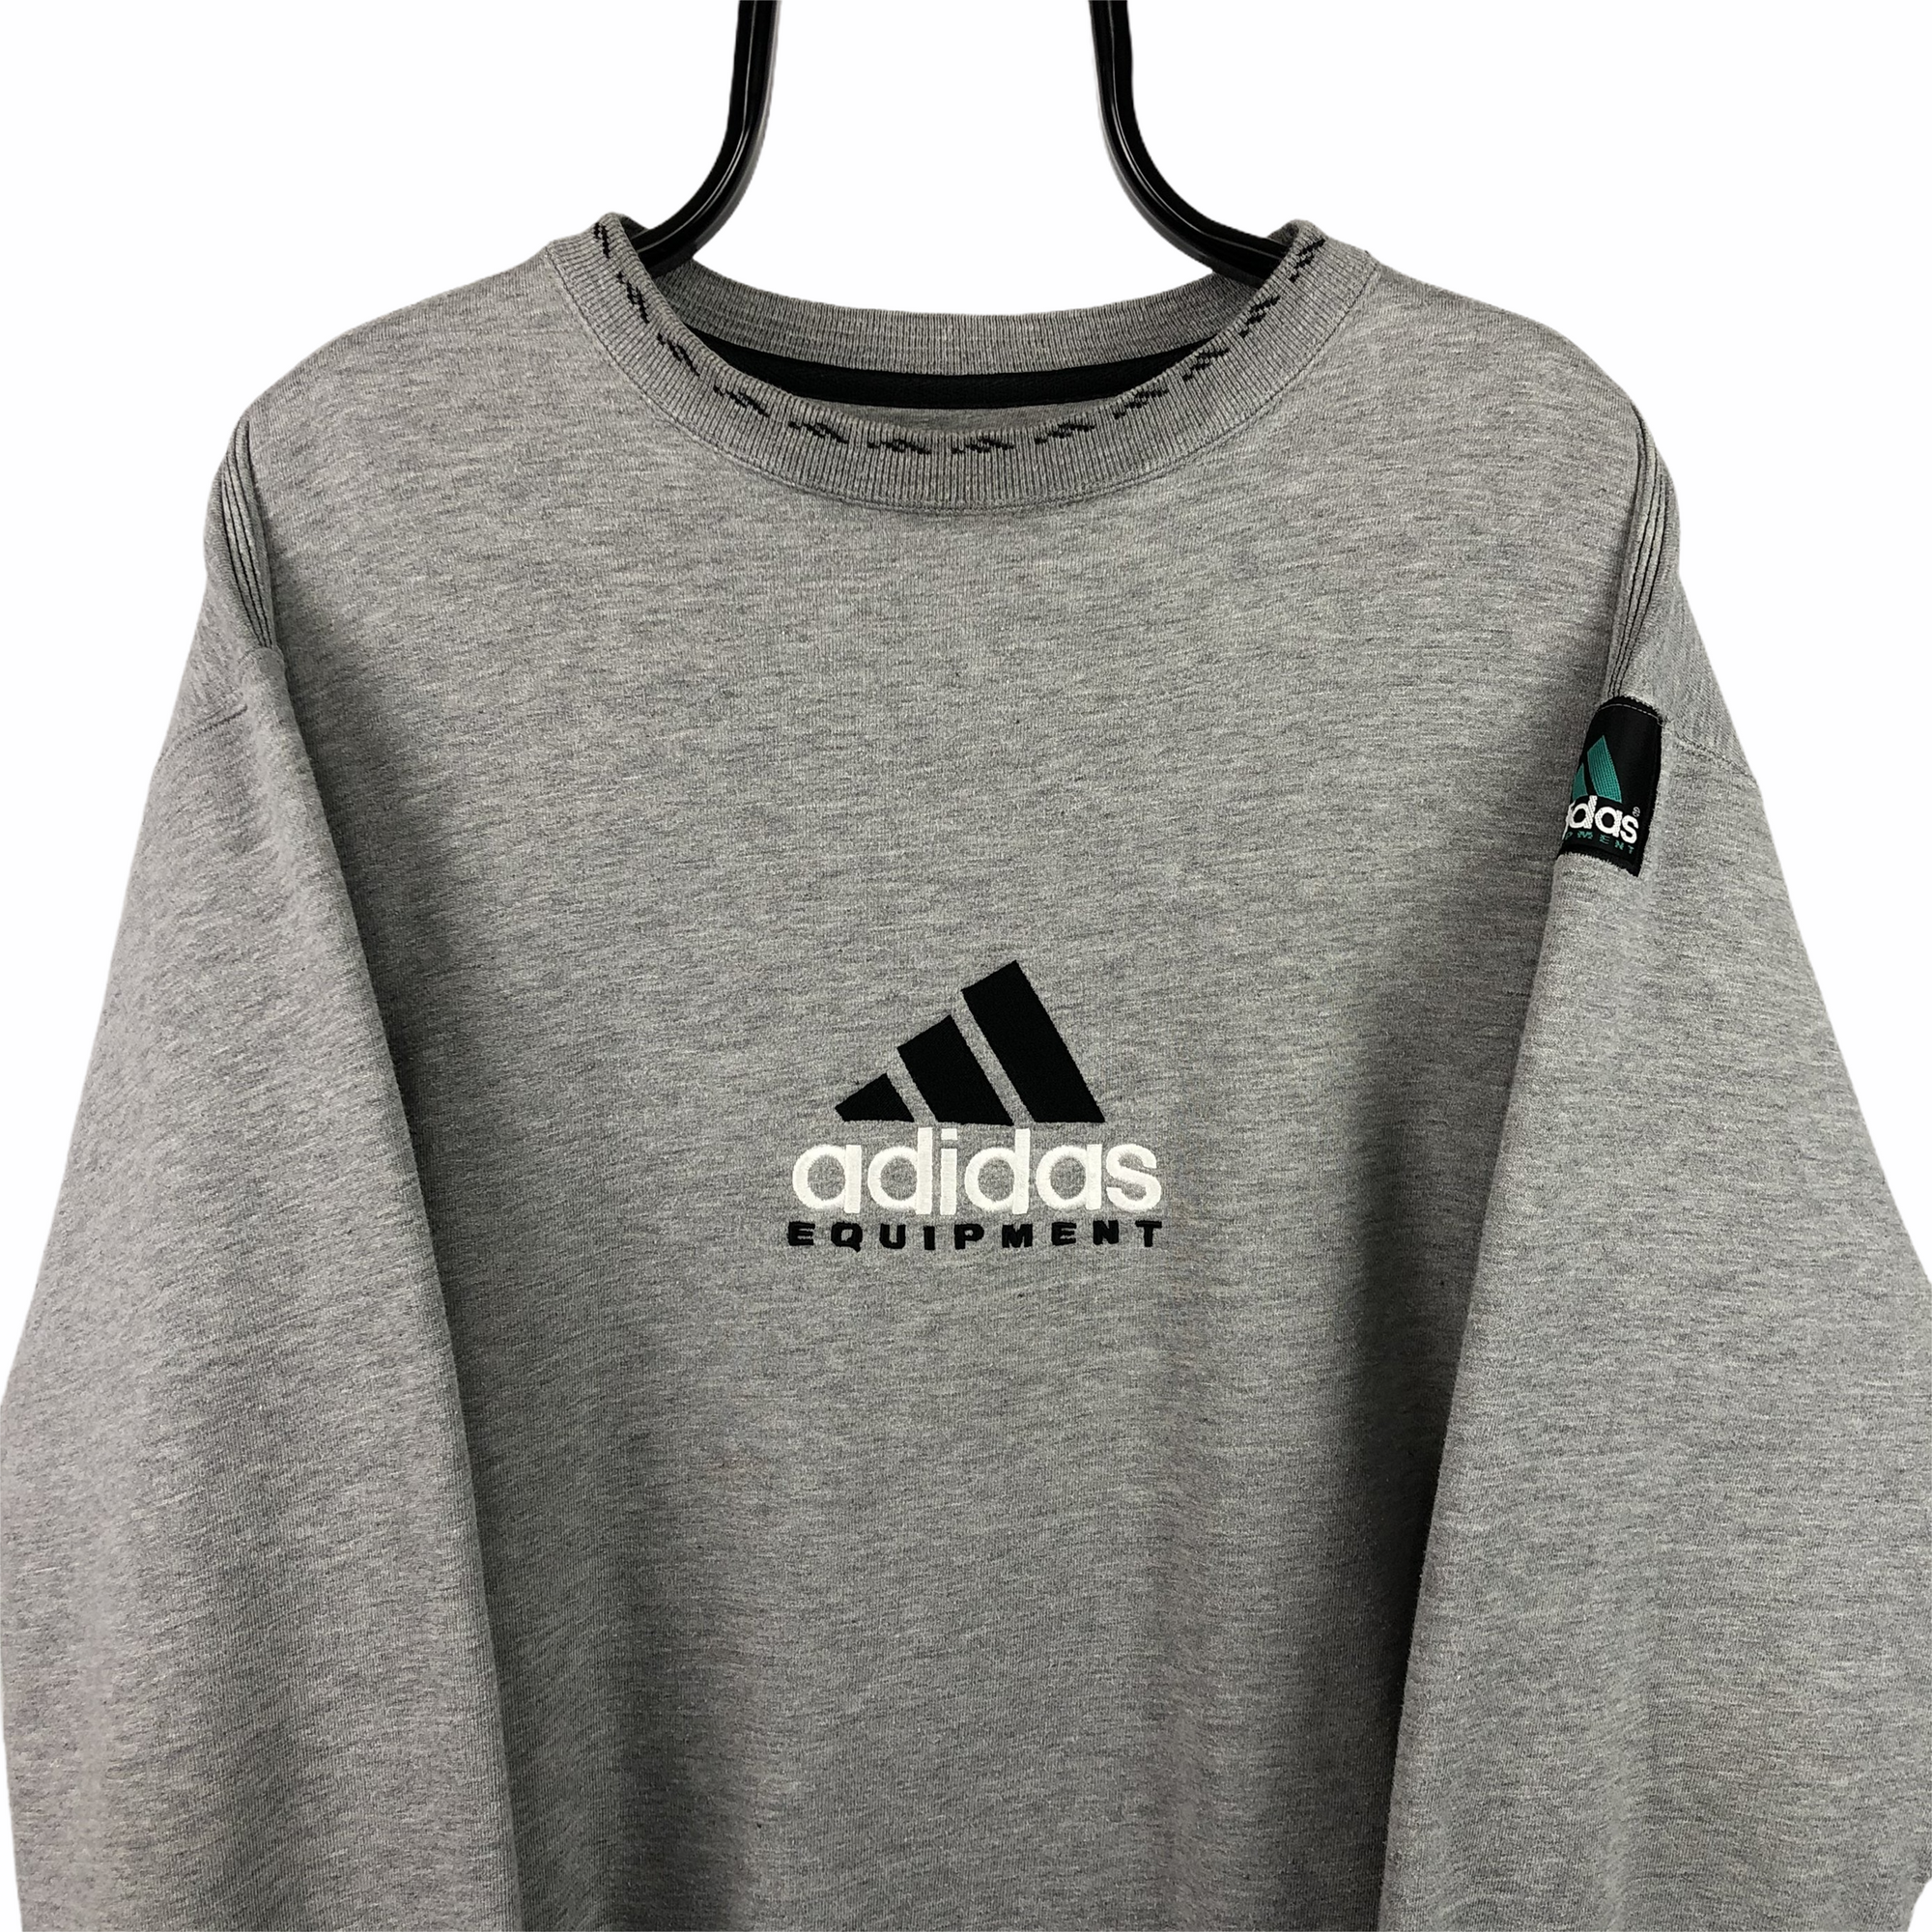 Vintage 90s Adidas Equipment Sweatshirt in Grey - Men's XL/Women's XXL